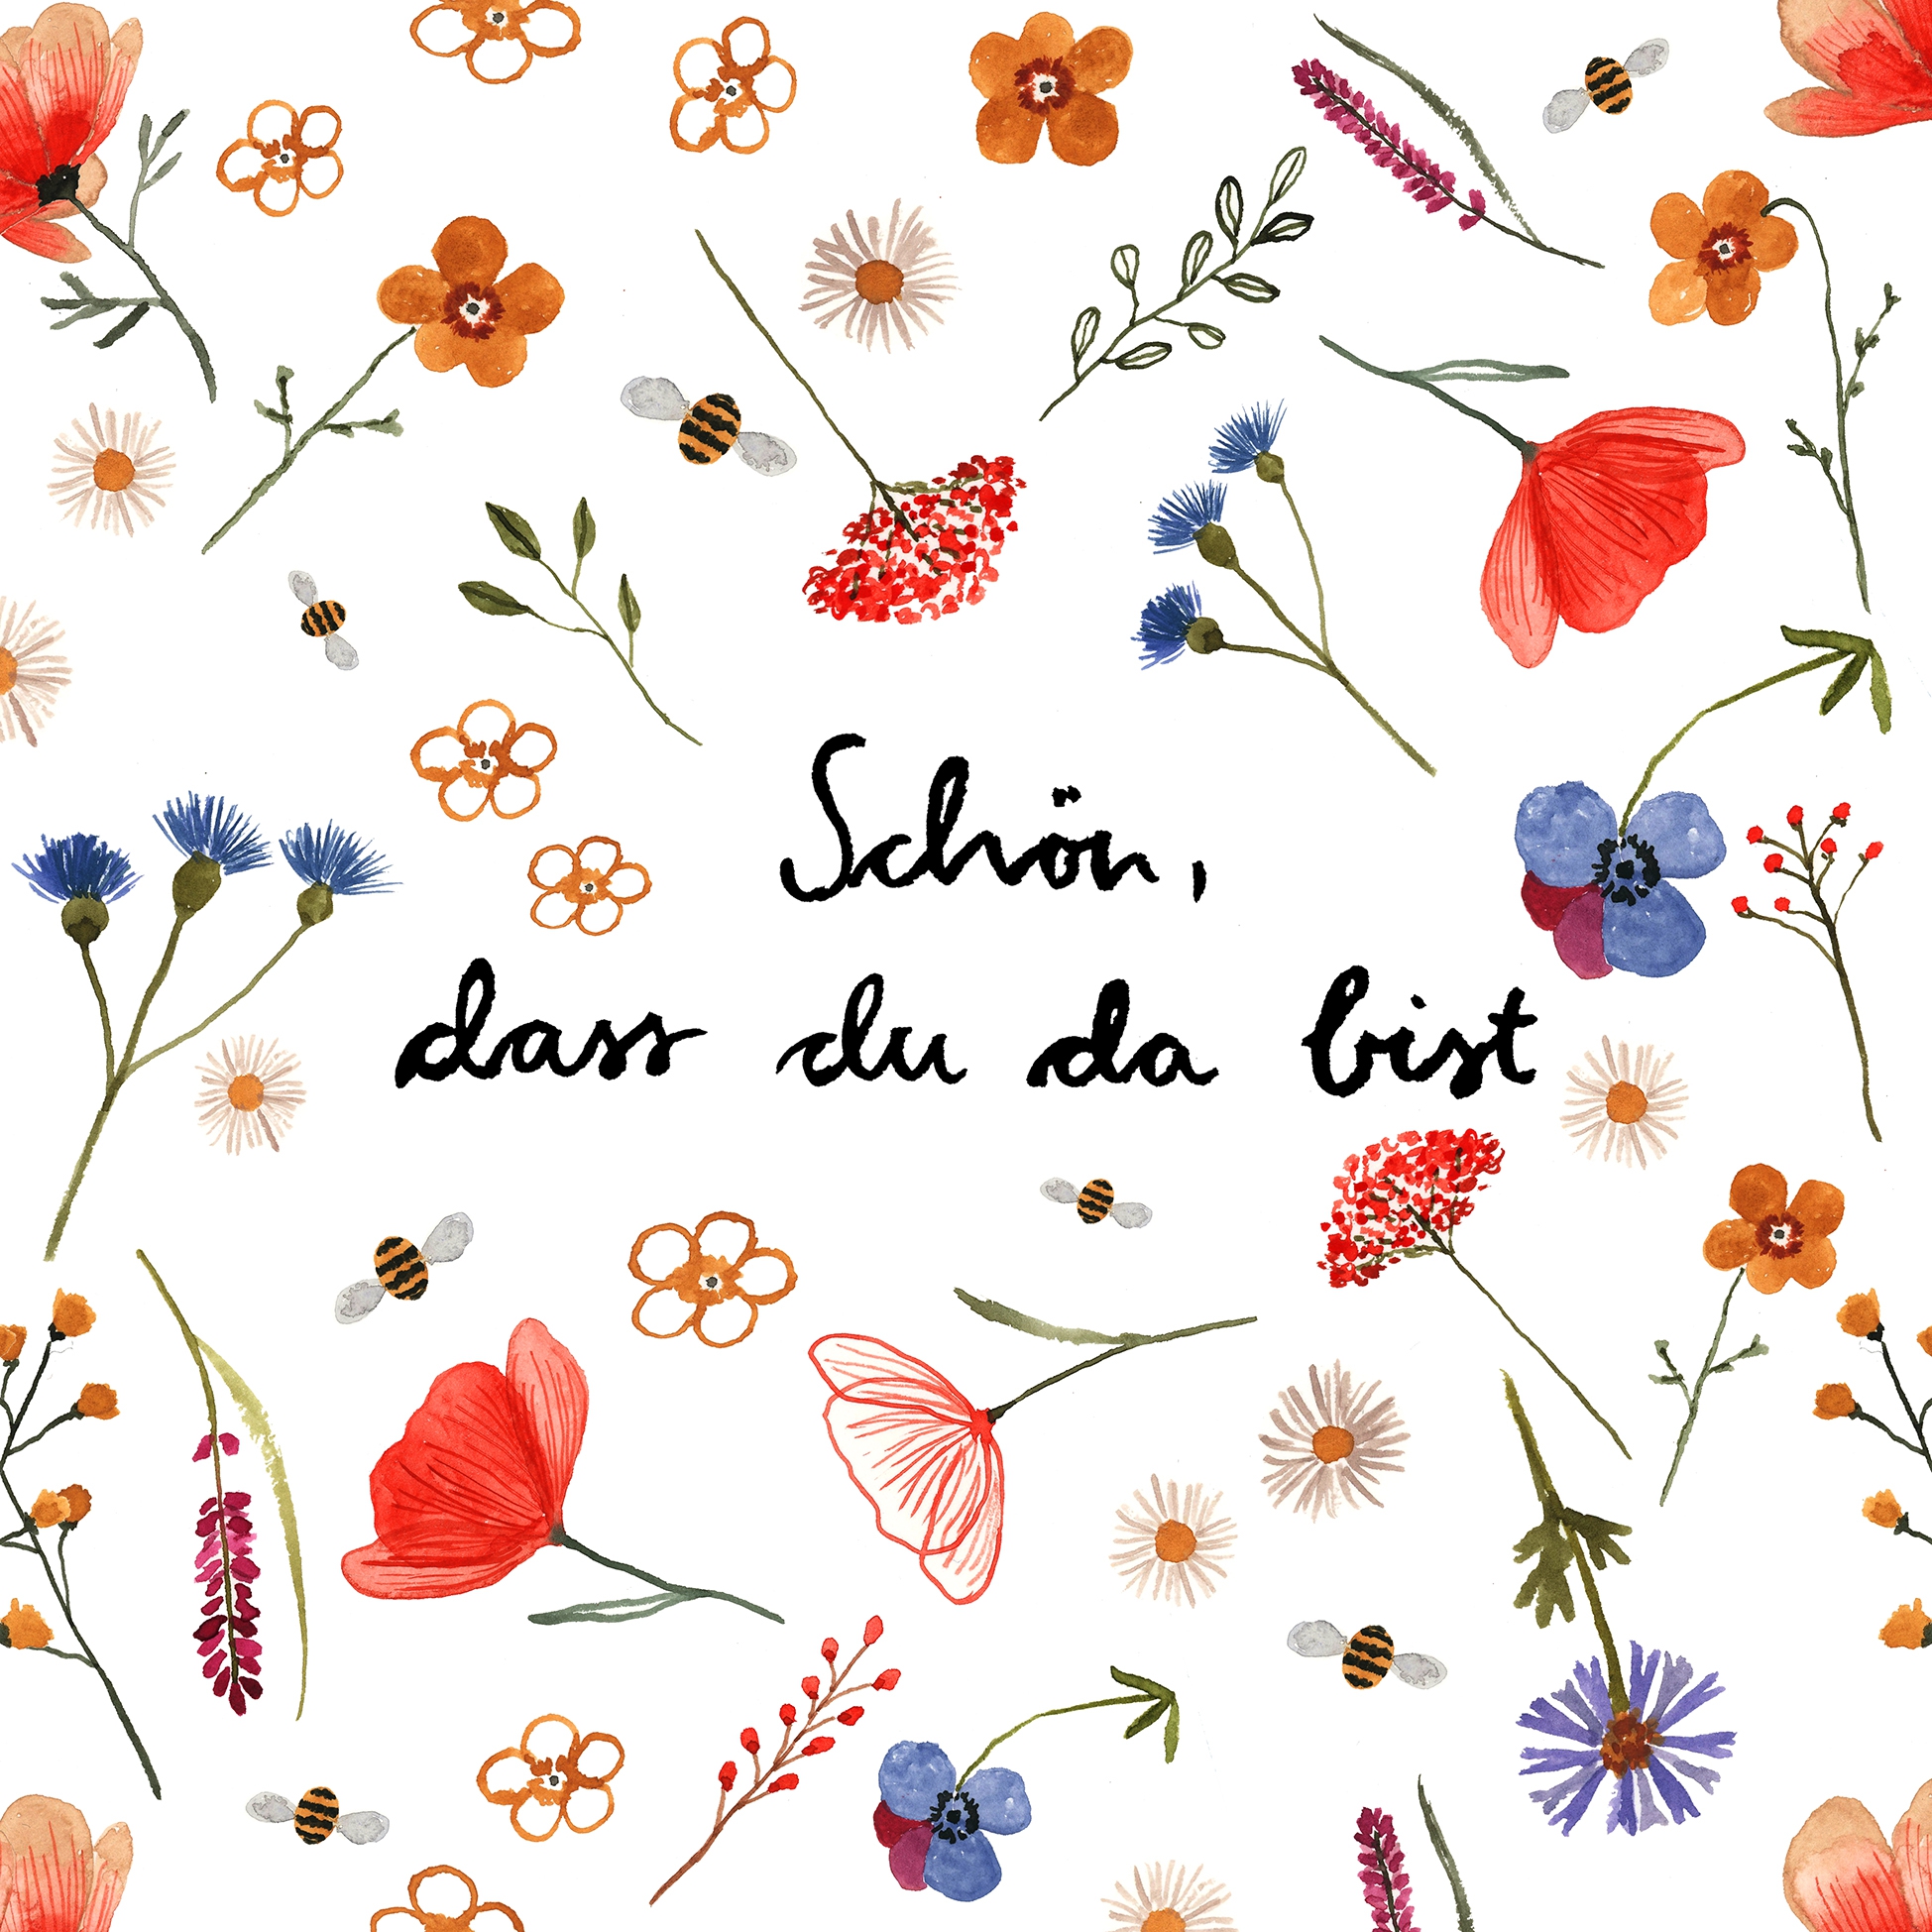 Servietten "Wiesenblumen" bedruckt mit bunten Blumen und dem Spruch "Schön, du da bist"